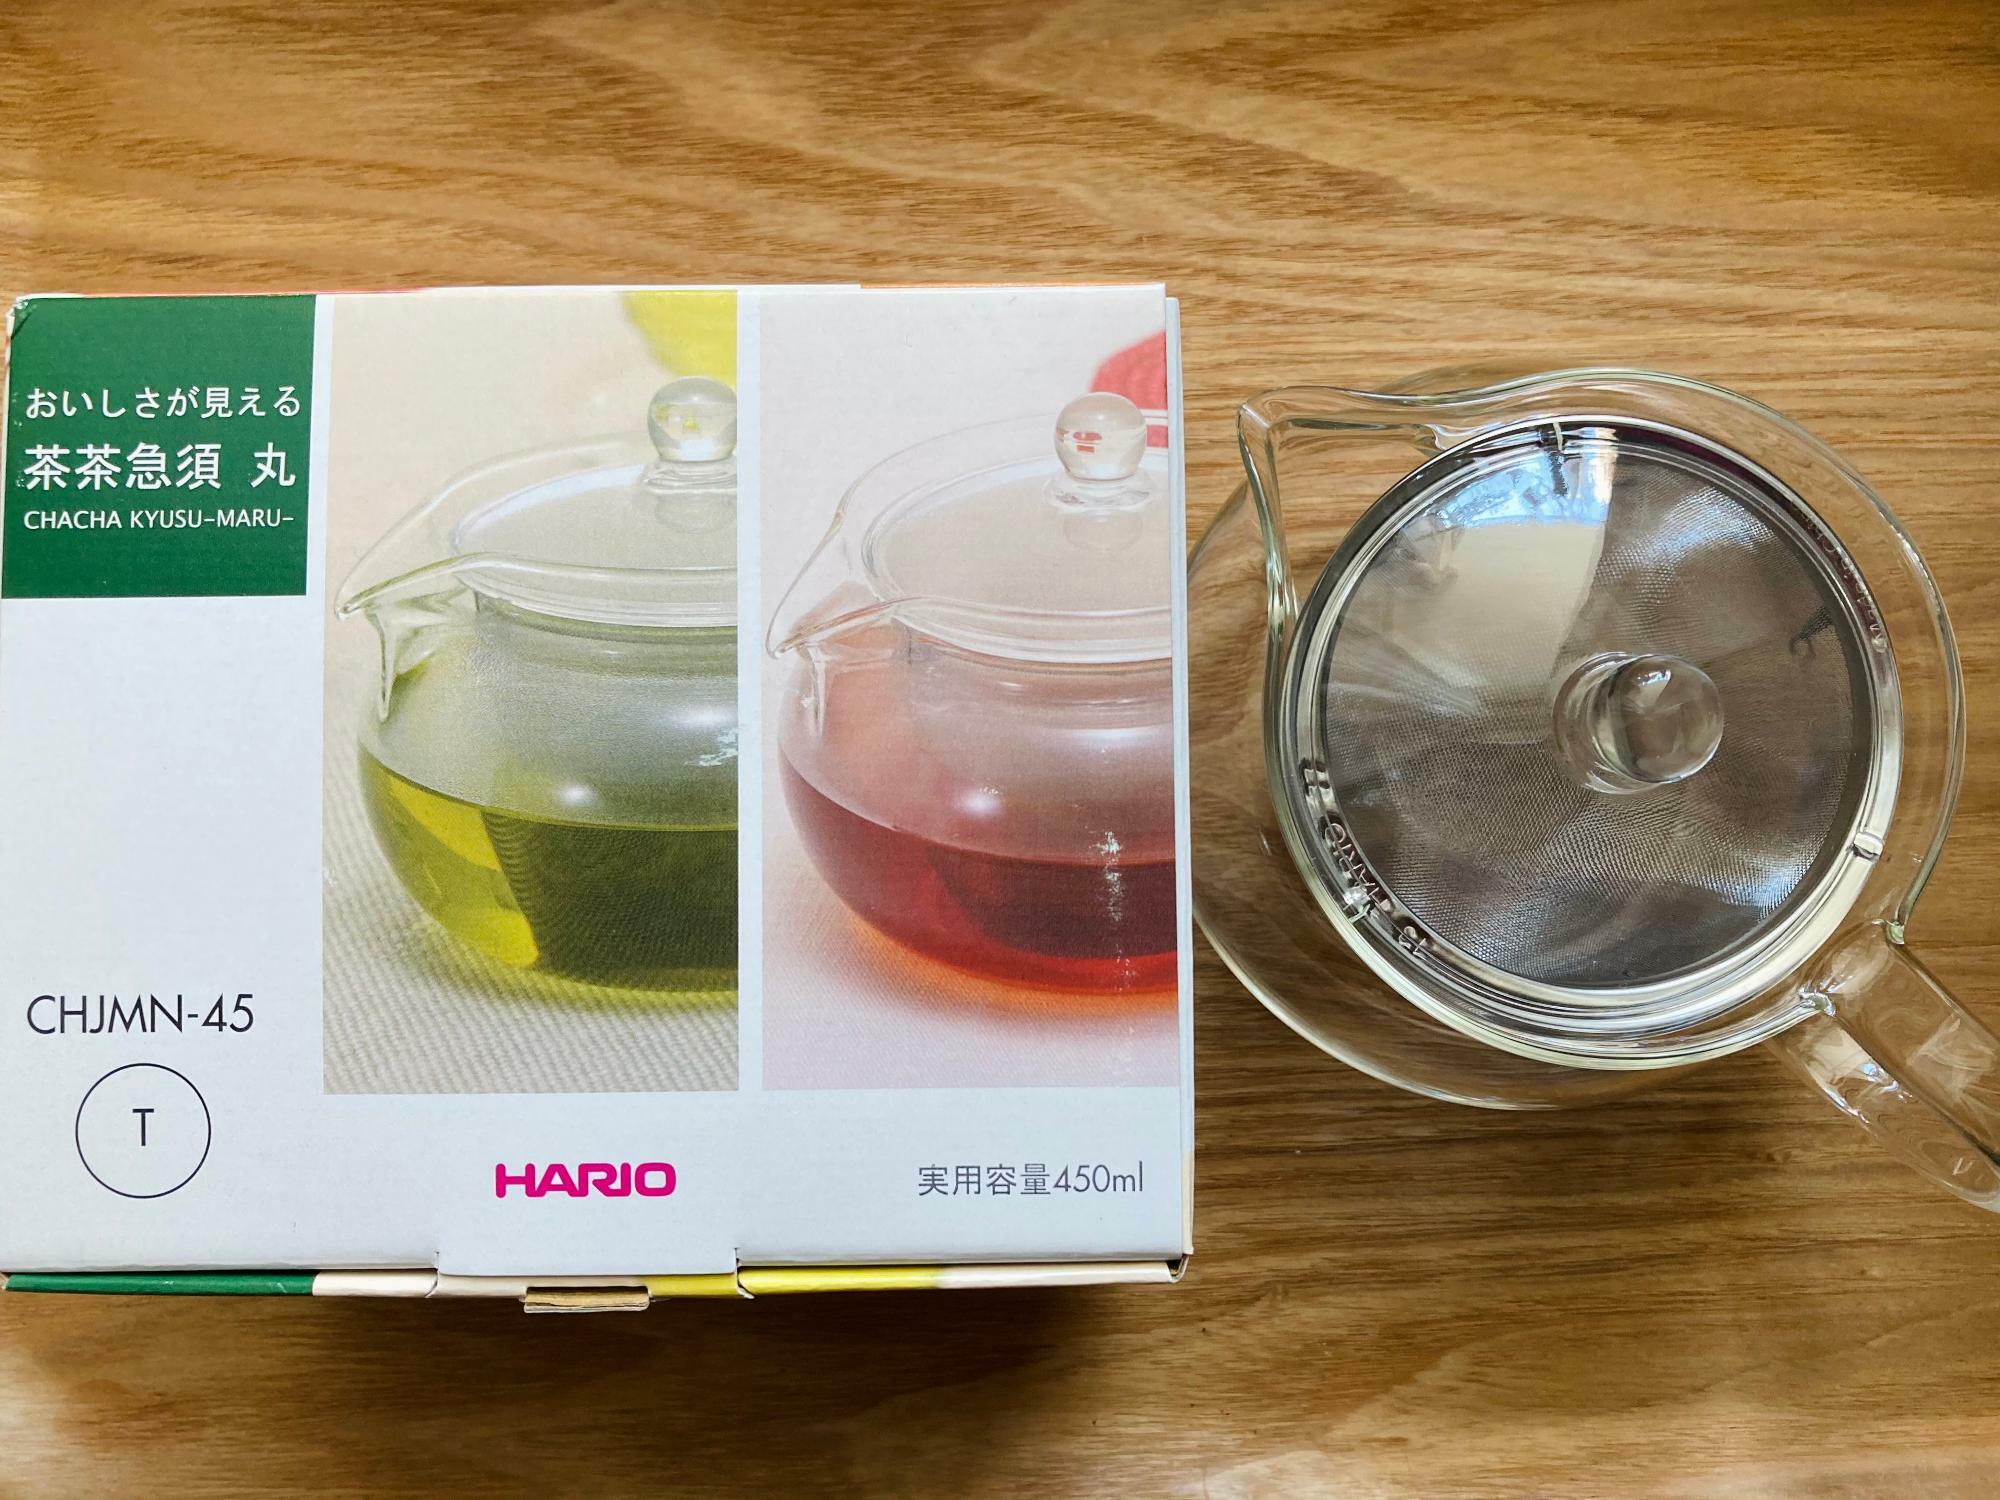 ハリオの「茶々急須 丸」これ１つあればオールマイティーに使えるので一人暮らしの方や初心者の方におすすめです。紅茶の茶葉をしっかり開かせたいときは付属の茶こしを外して使っています。